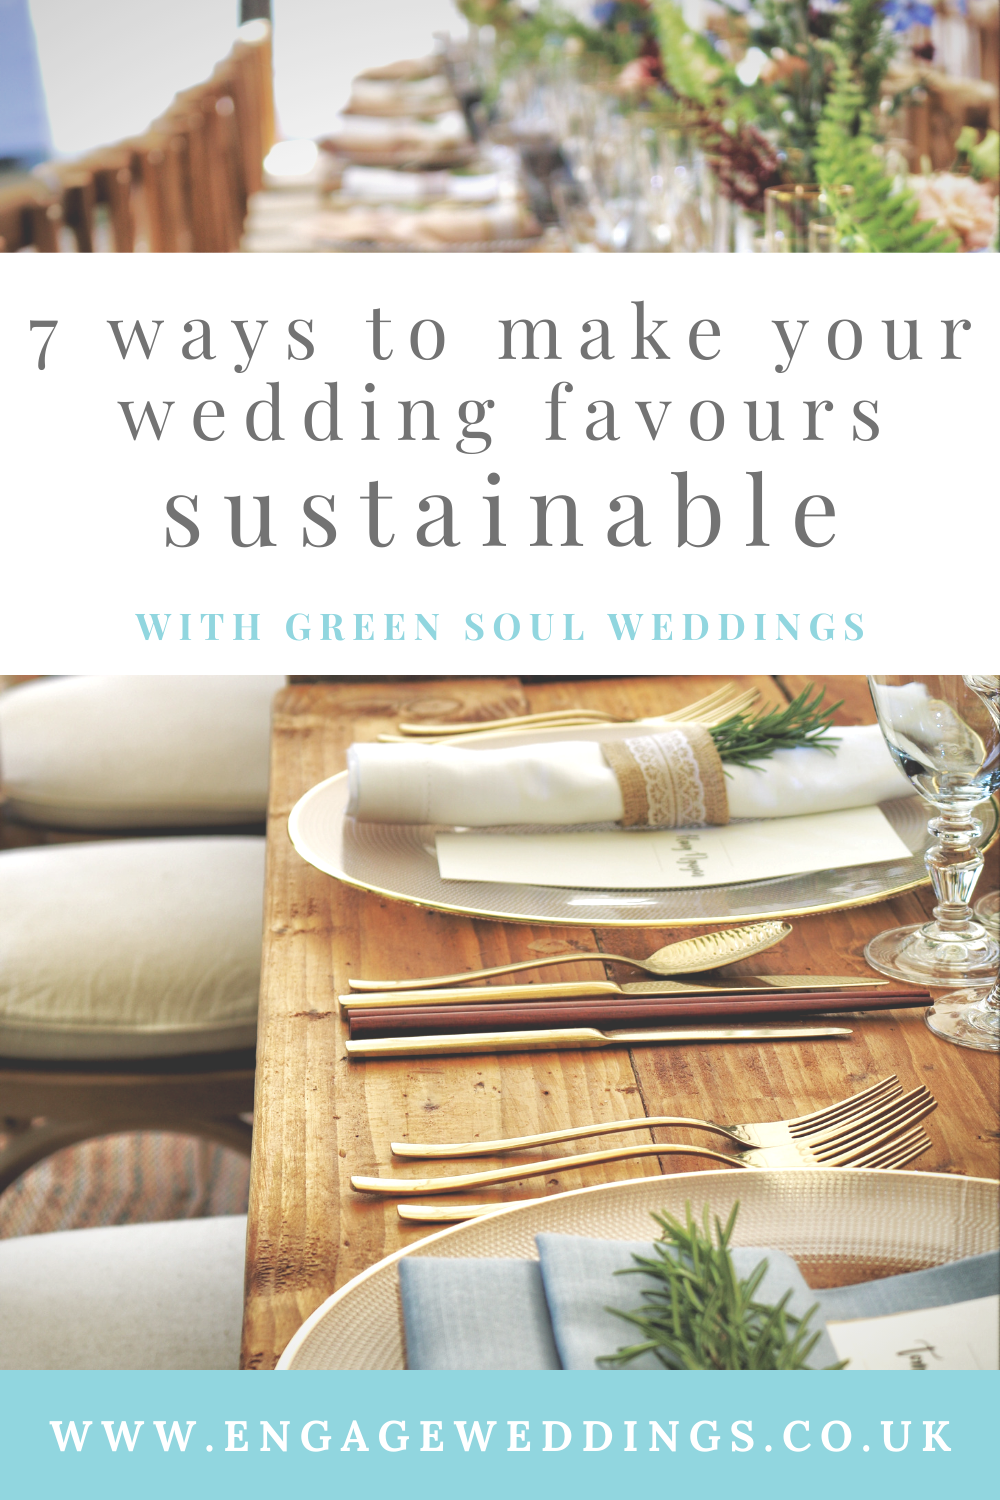 7 ways to make your wedding favours sustainable_engageweddings.co.uk